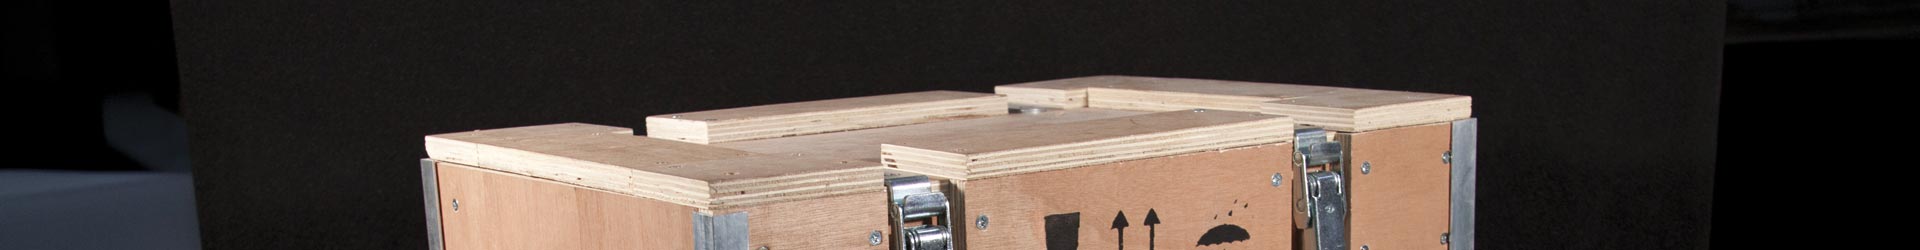 fabrication de caisse en bois - Groupe Abaque - Condi Atlantique - caisse avec renfort de mousse polyéthylène PE